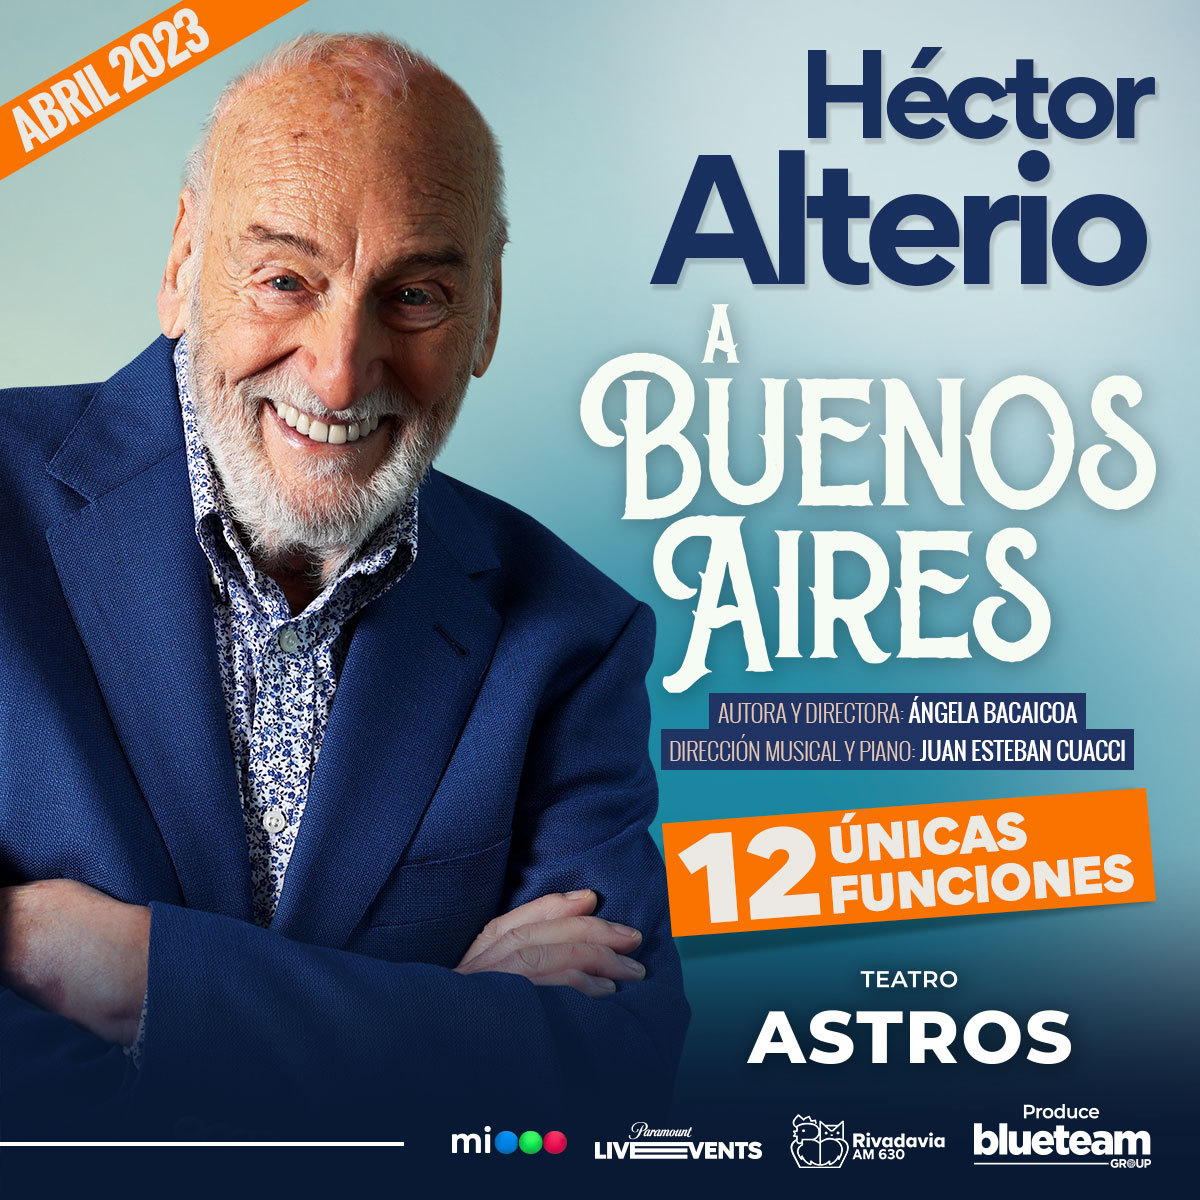 Cartel publicitario de sus actuaciones en el Teatro Astros de Buenos Aires